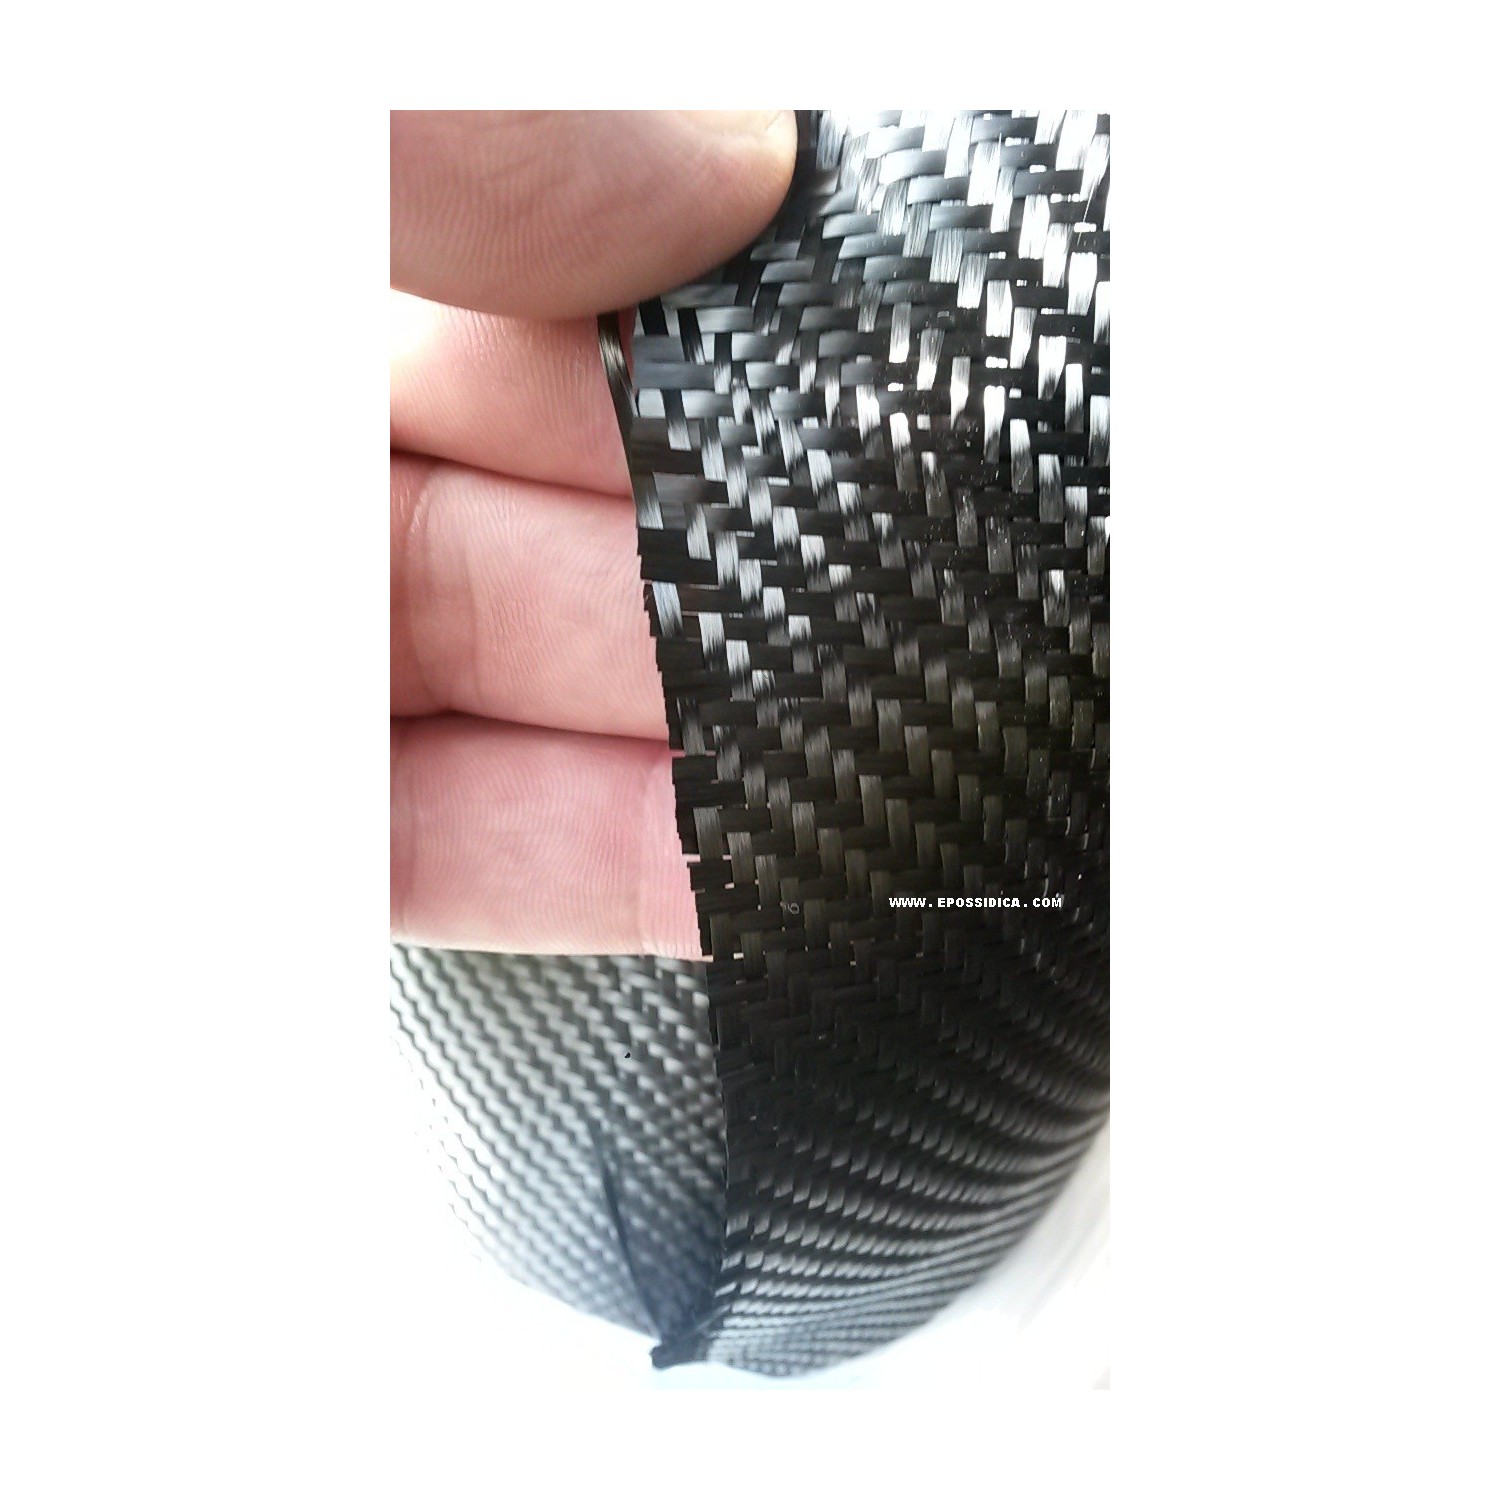 twill tessuto fibra di carbonio 200 grammi costo, vendita, offerta